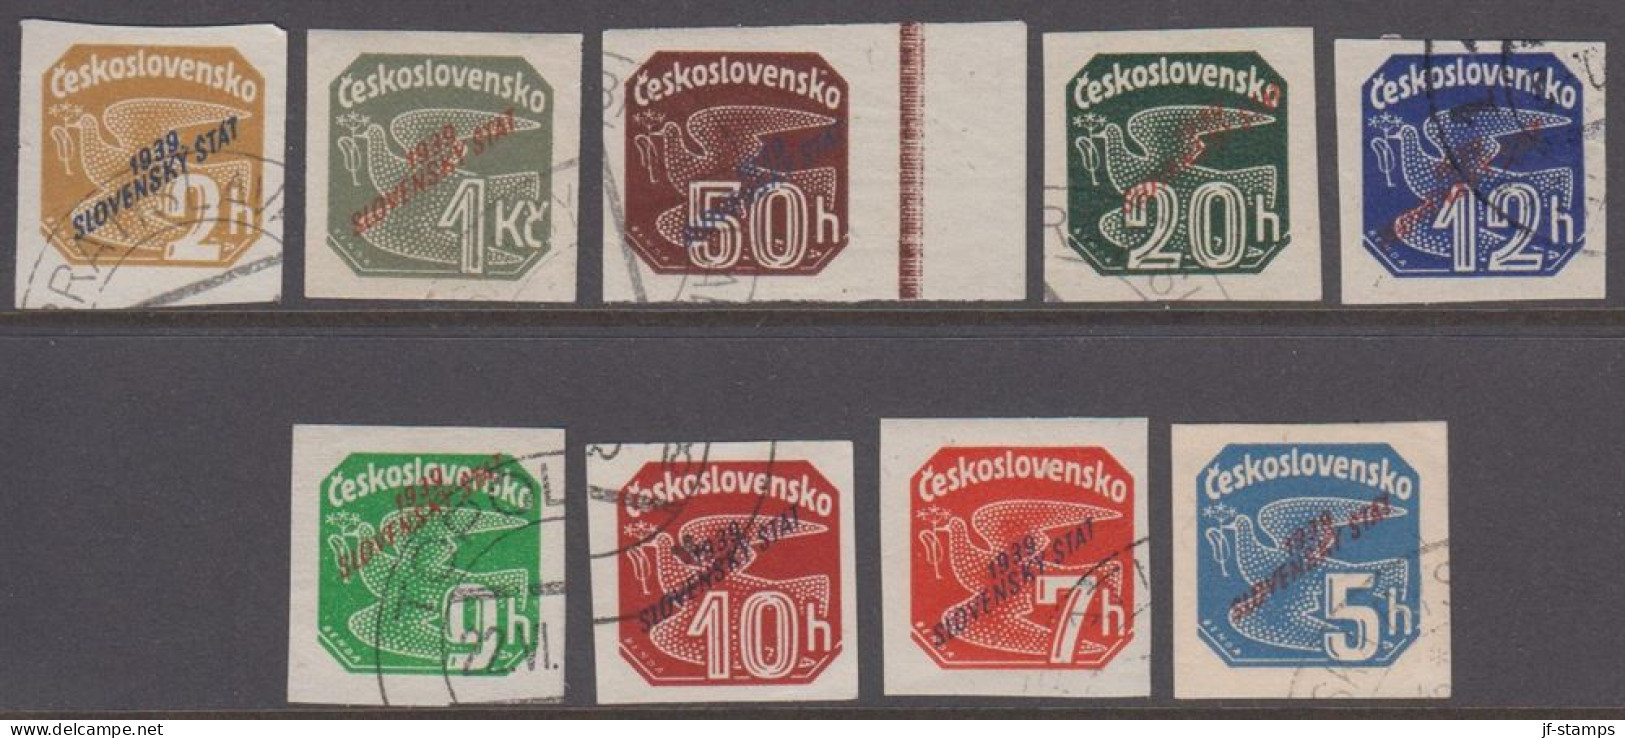 1939. SLOVENSKO 1939 / Slovenský štát On Newspaper Stamps. Complete Set Of 9 Stamps.  (Michel 26-34) - JF418434 - Usados